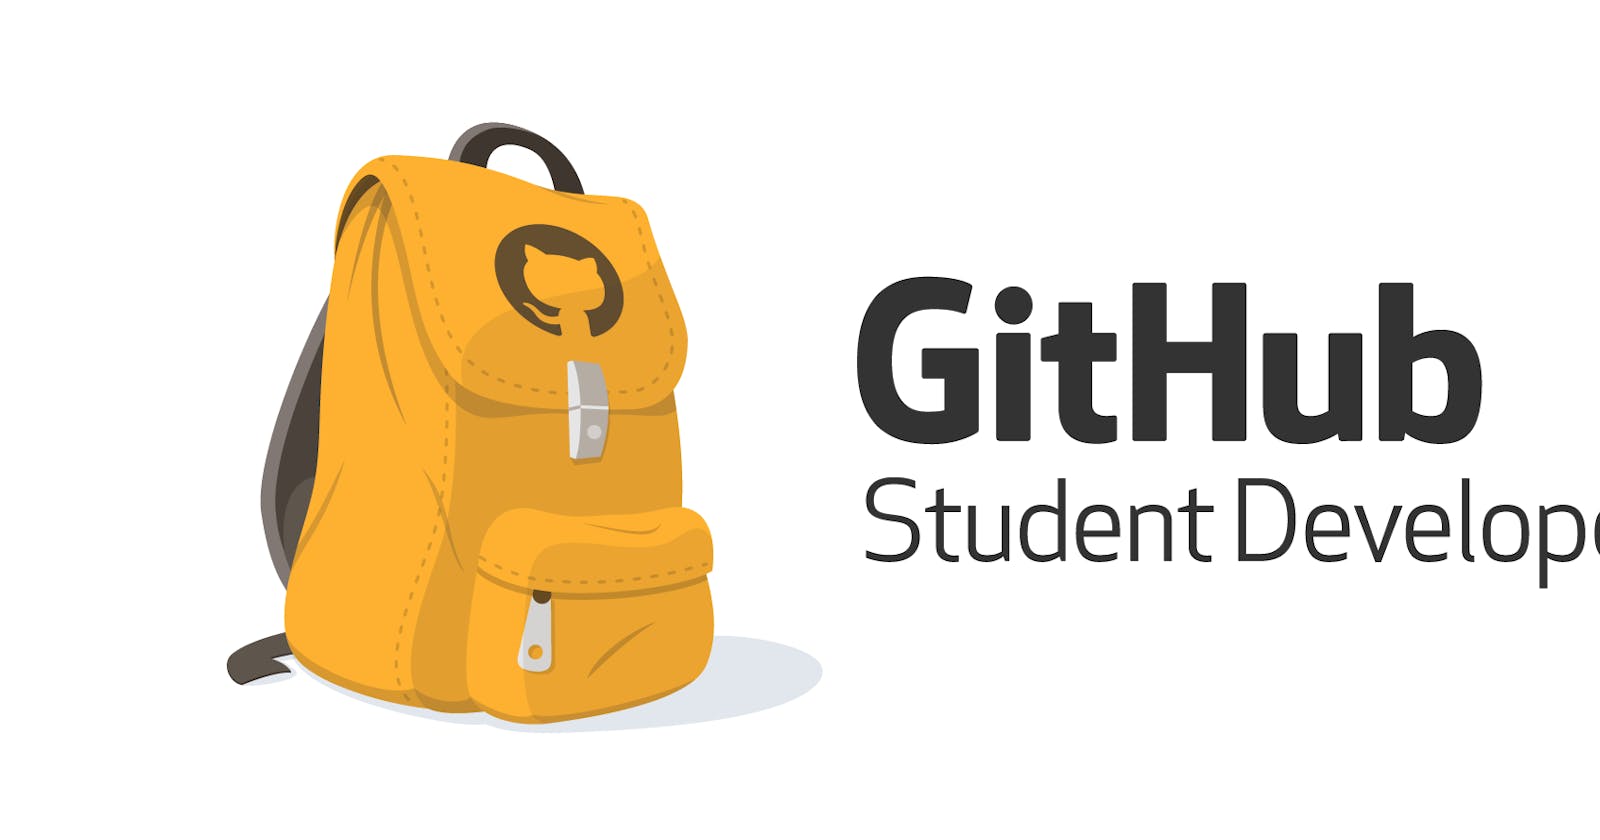 Get Github Student Developer Pack 2022